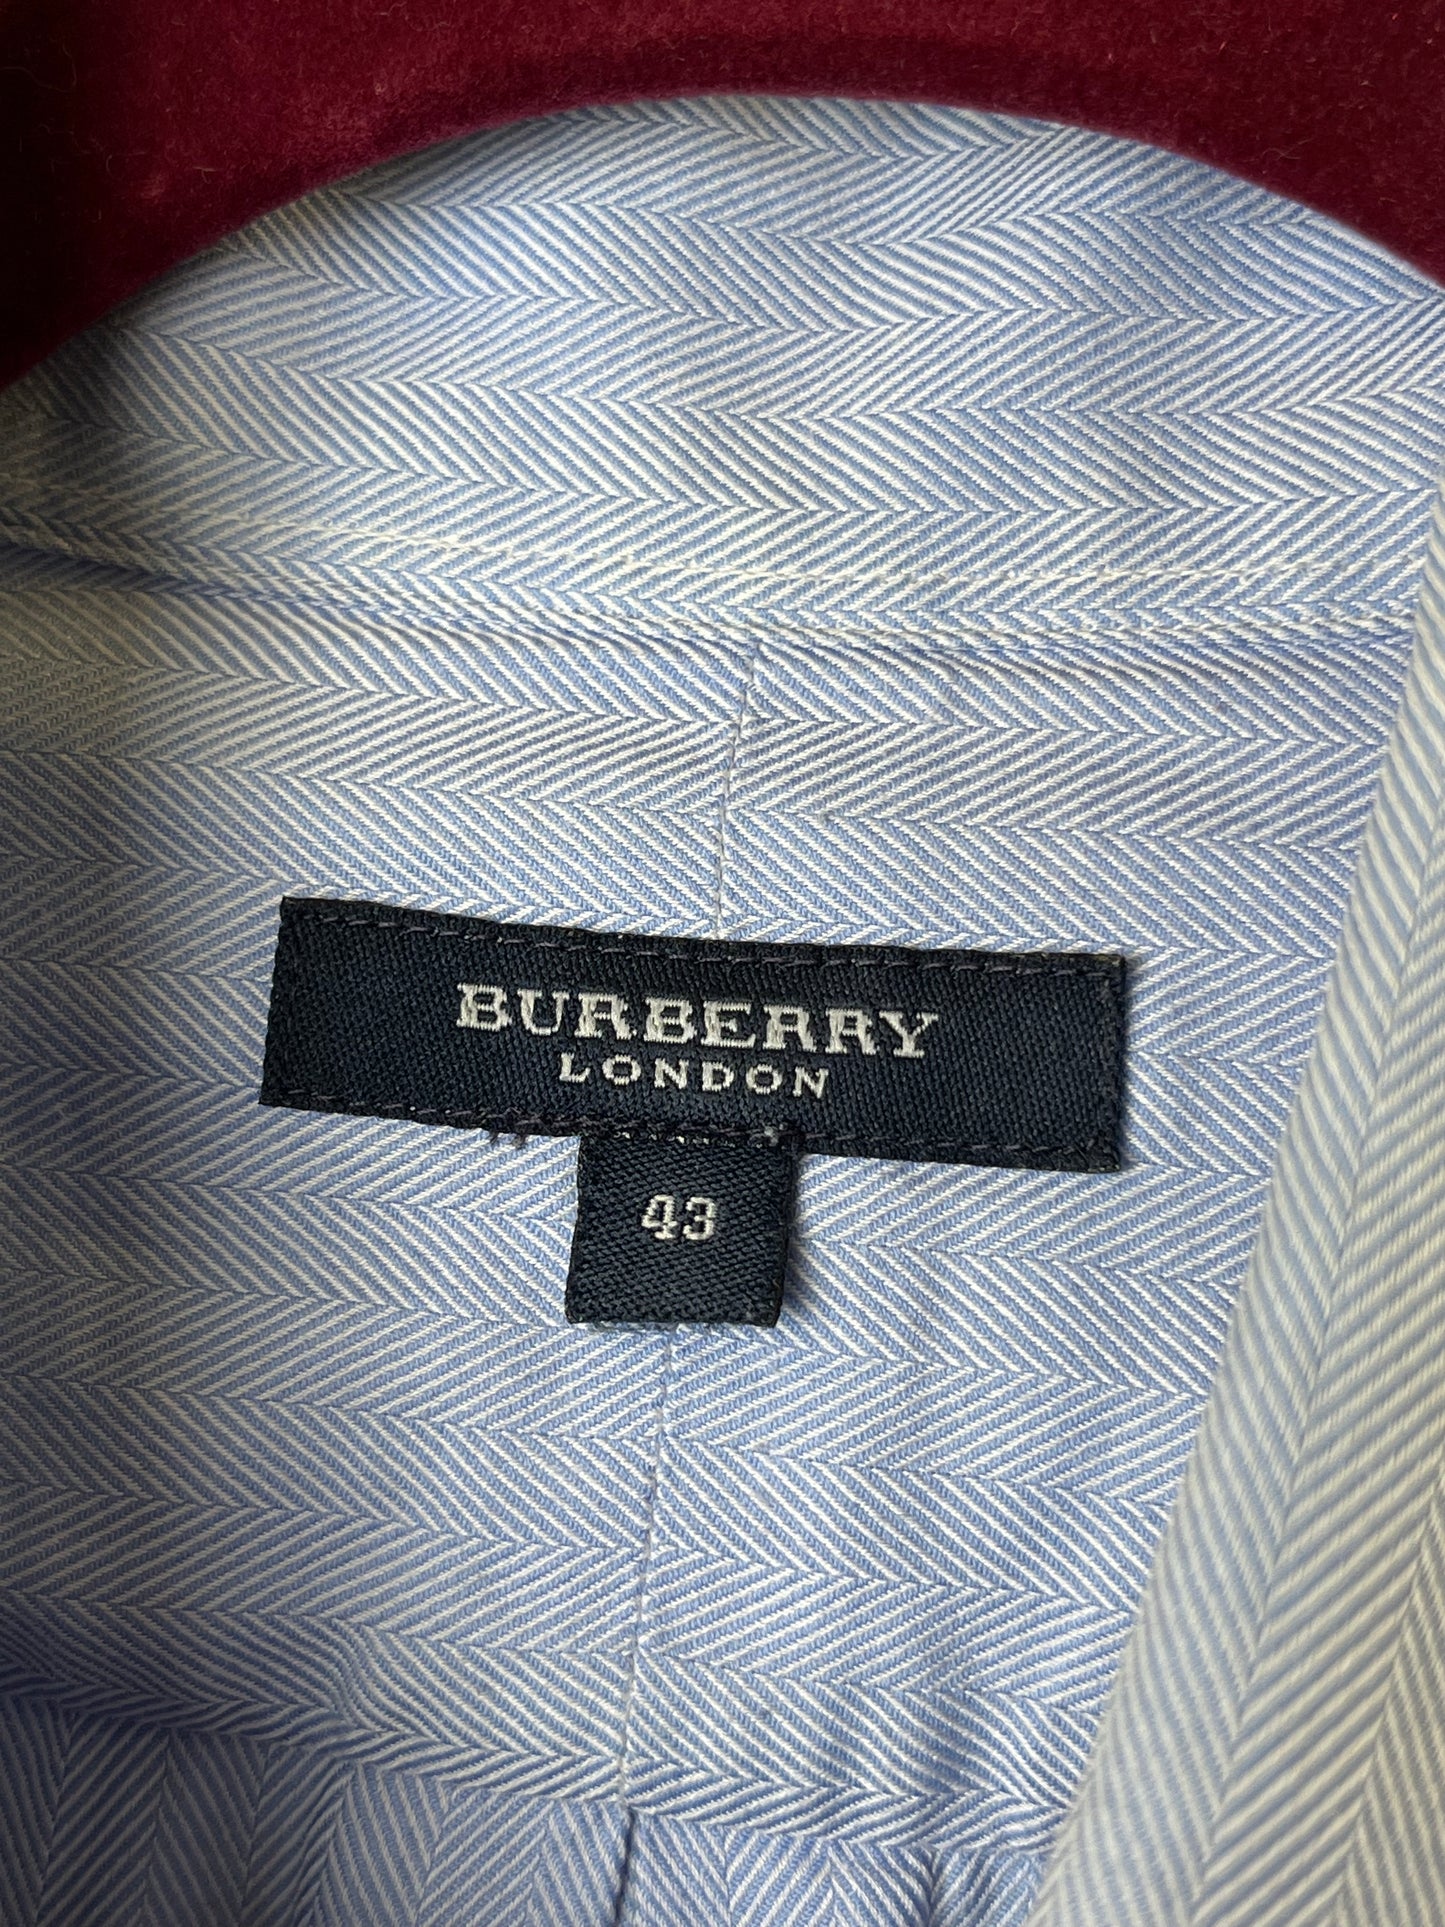 Camicia Burberry tg. XL-XXL